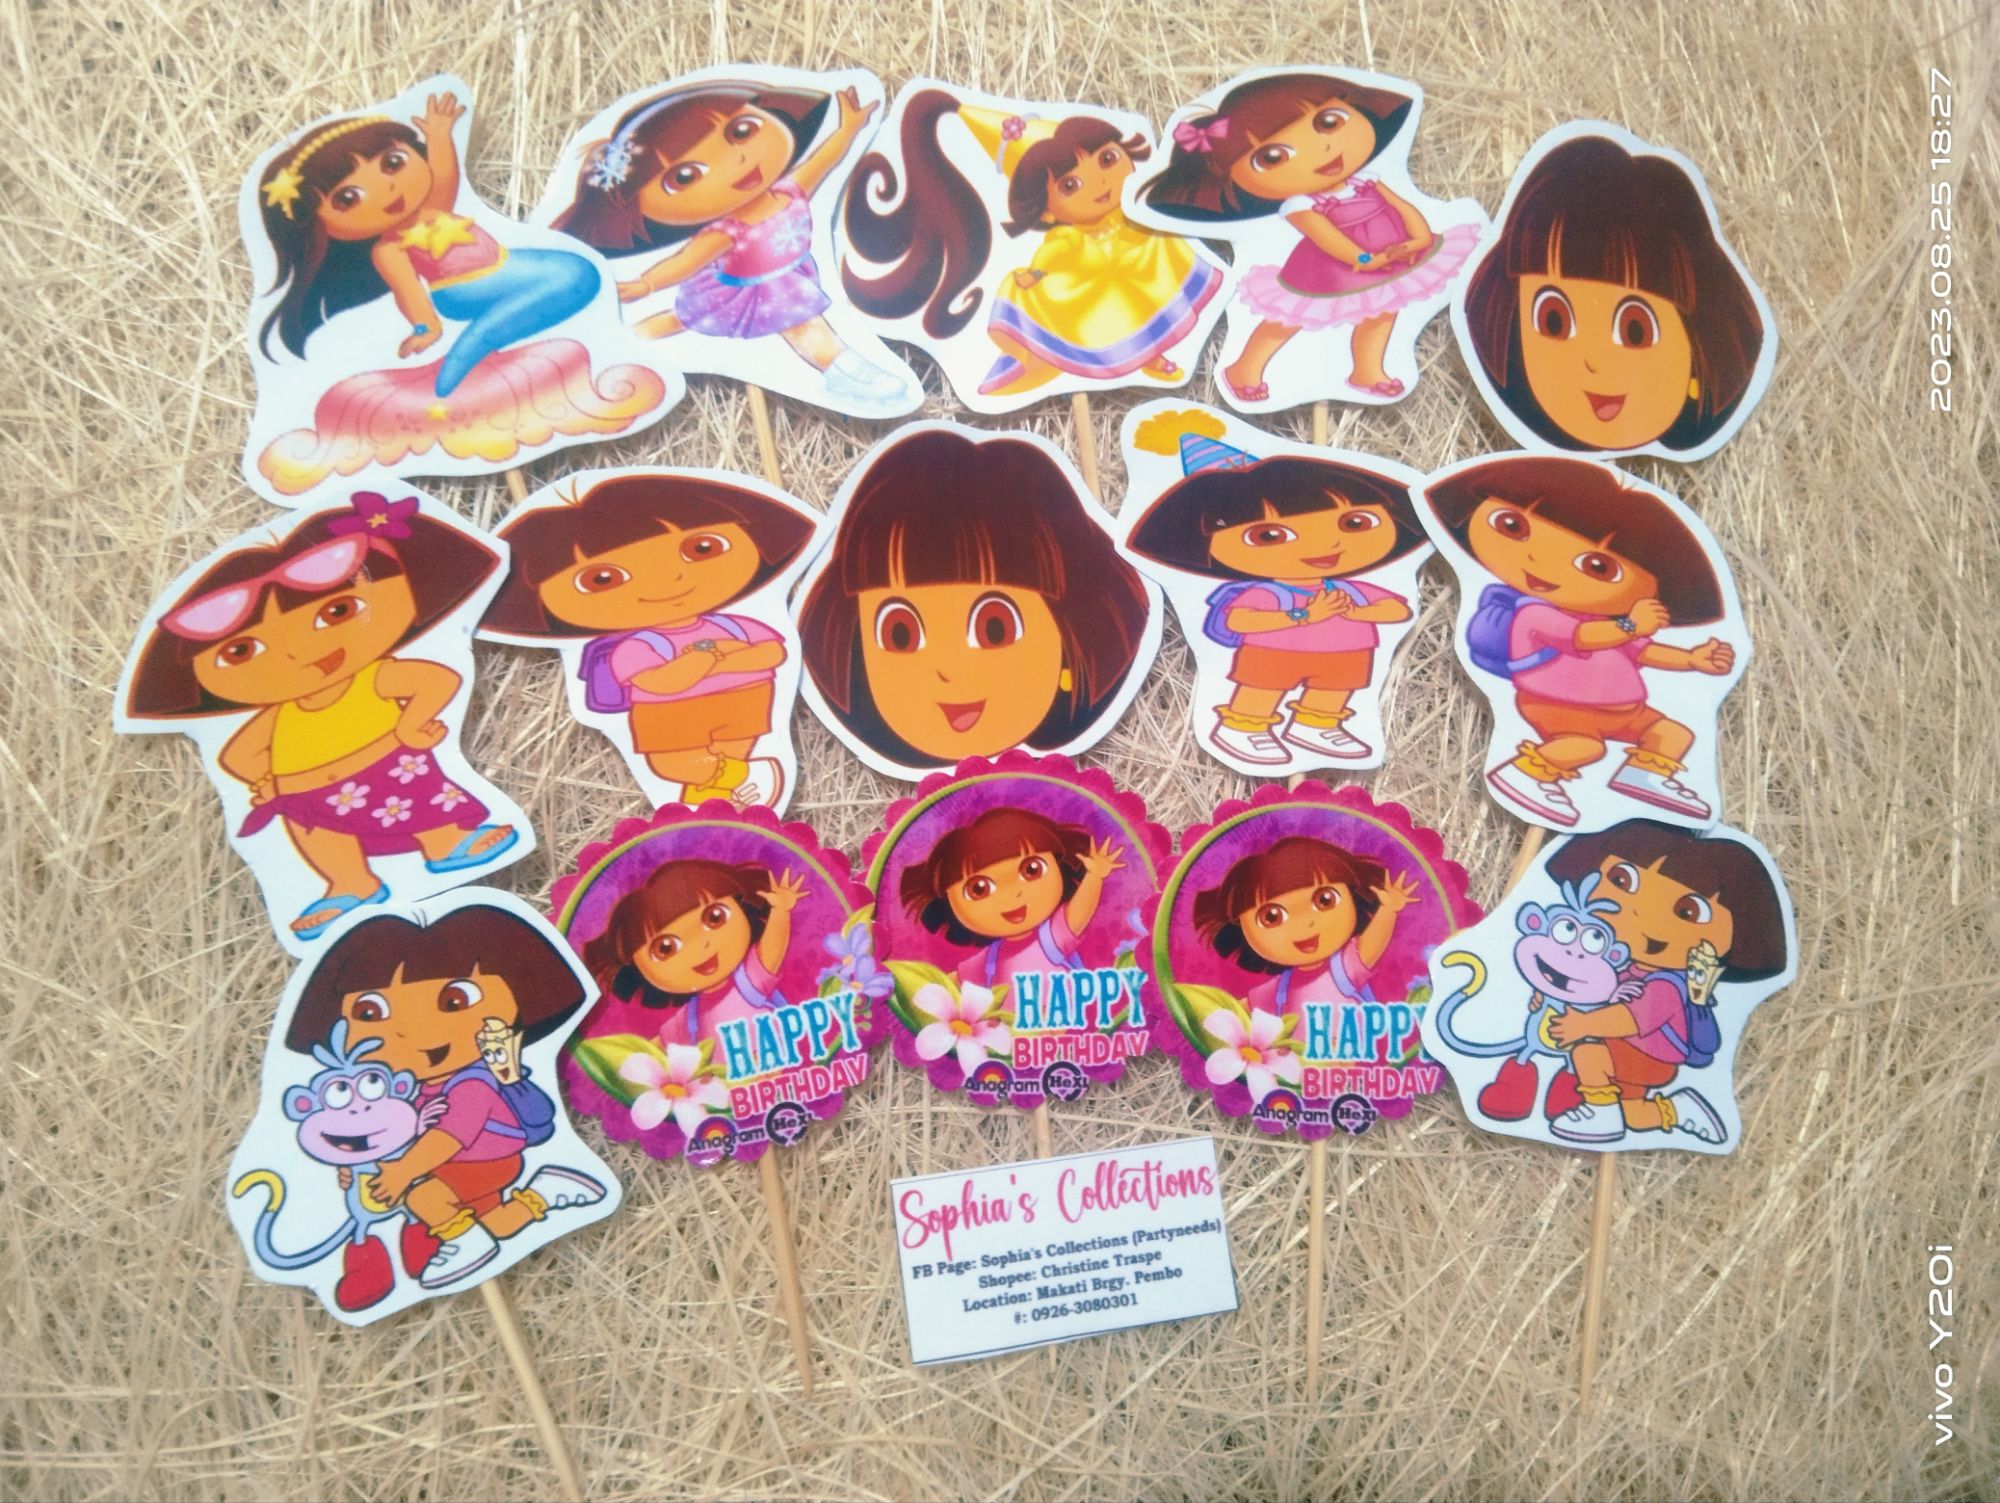 Dora Theme Customized Cake Topper | Birthday Party Supplies India